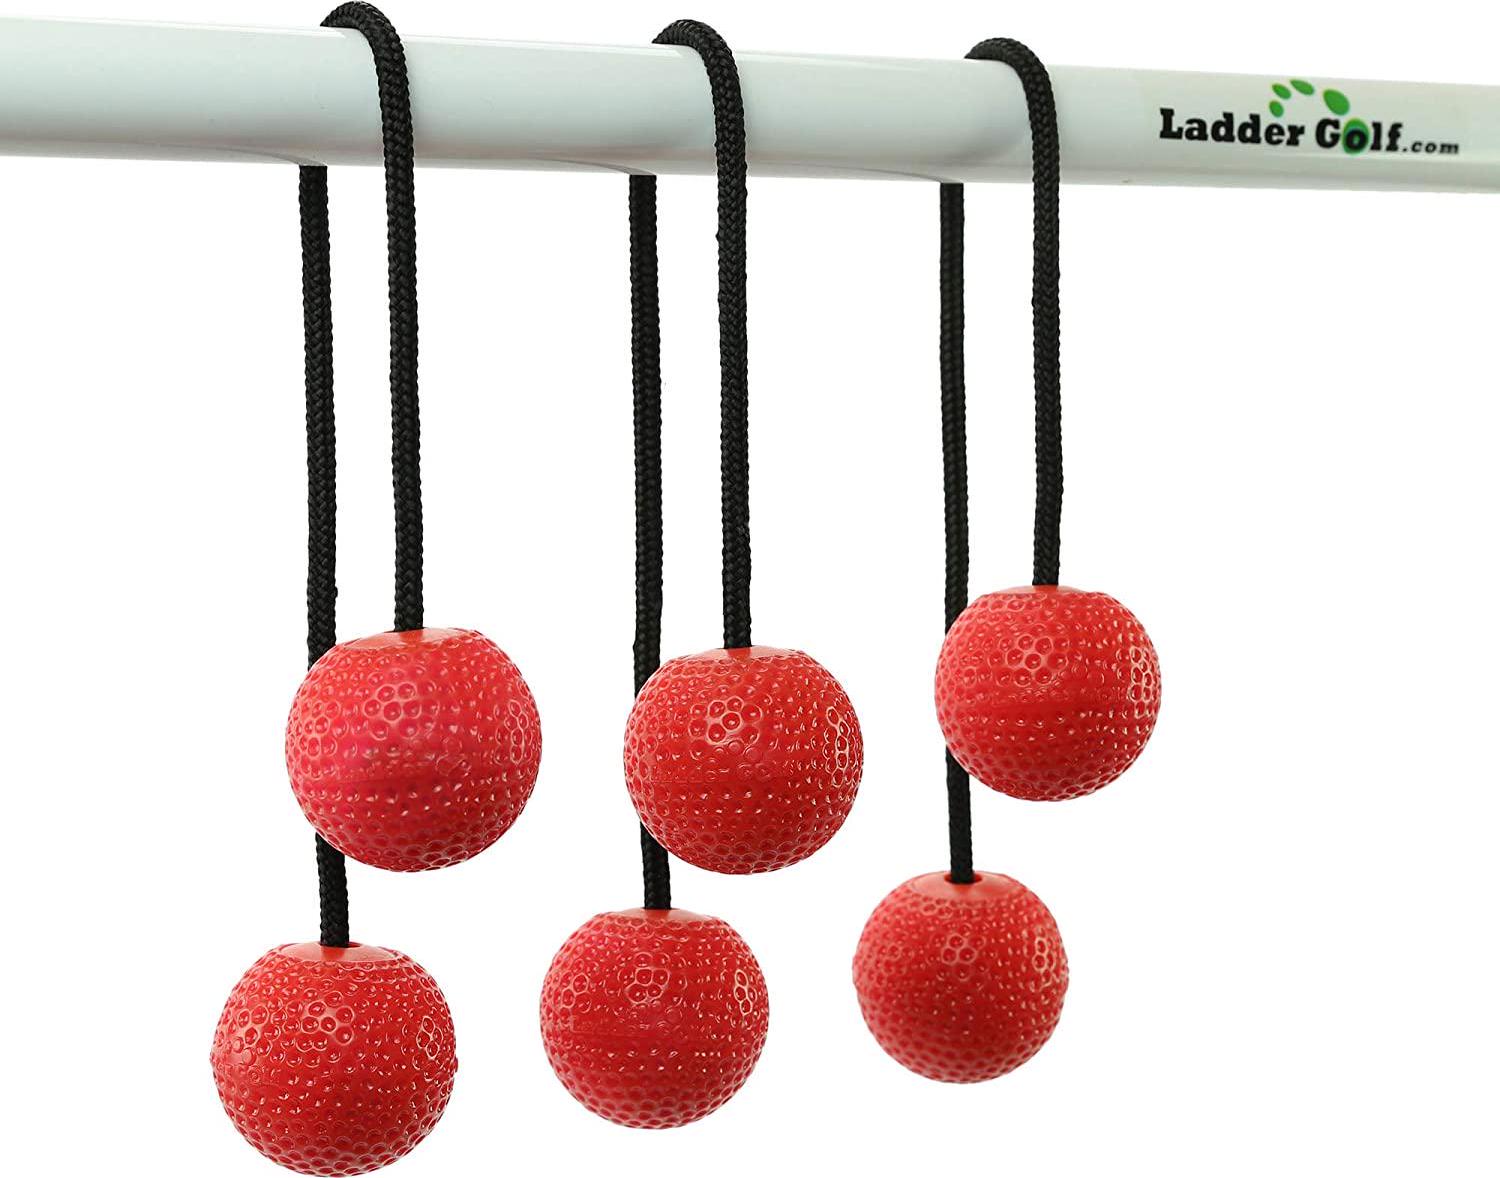 Ladder Golf, Ladder Golf Official Brand Bolas (Soft), 3PK